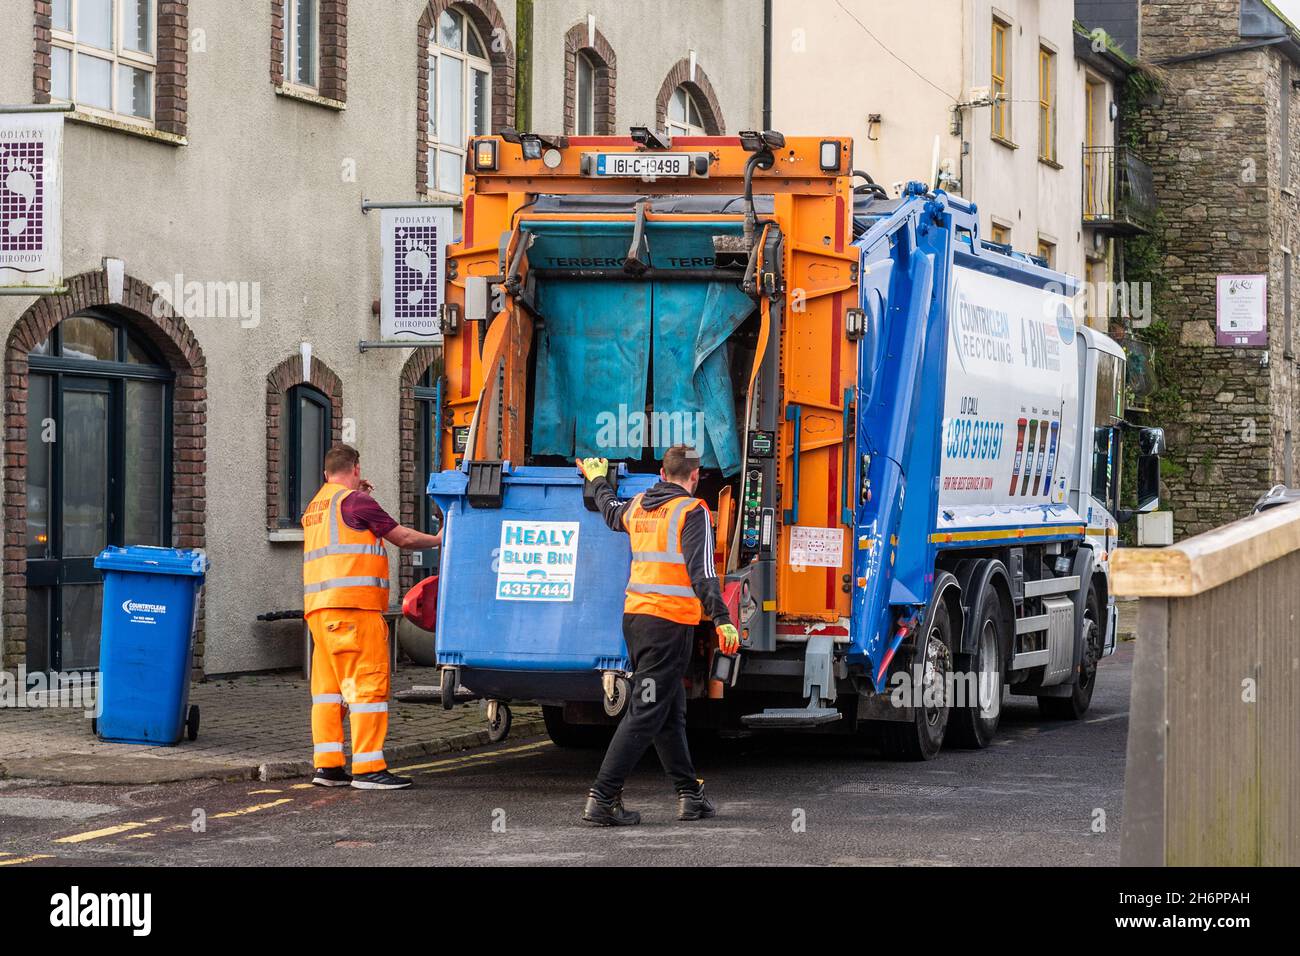 Les bennes vides refusent dans un camion de bennes à Bandon, West Cork, Irlande. Banque D'Images